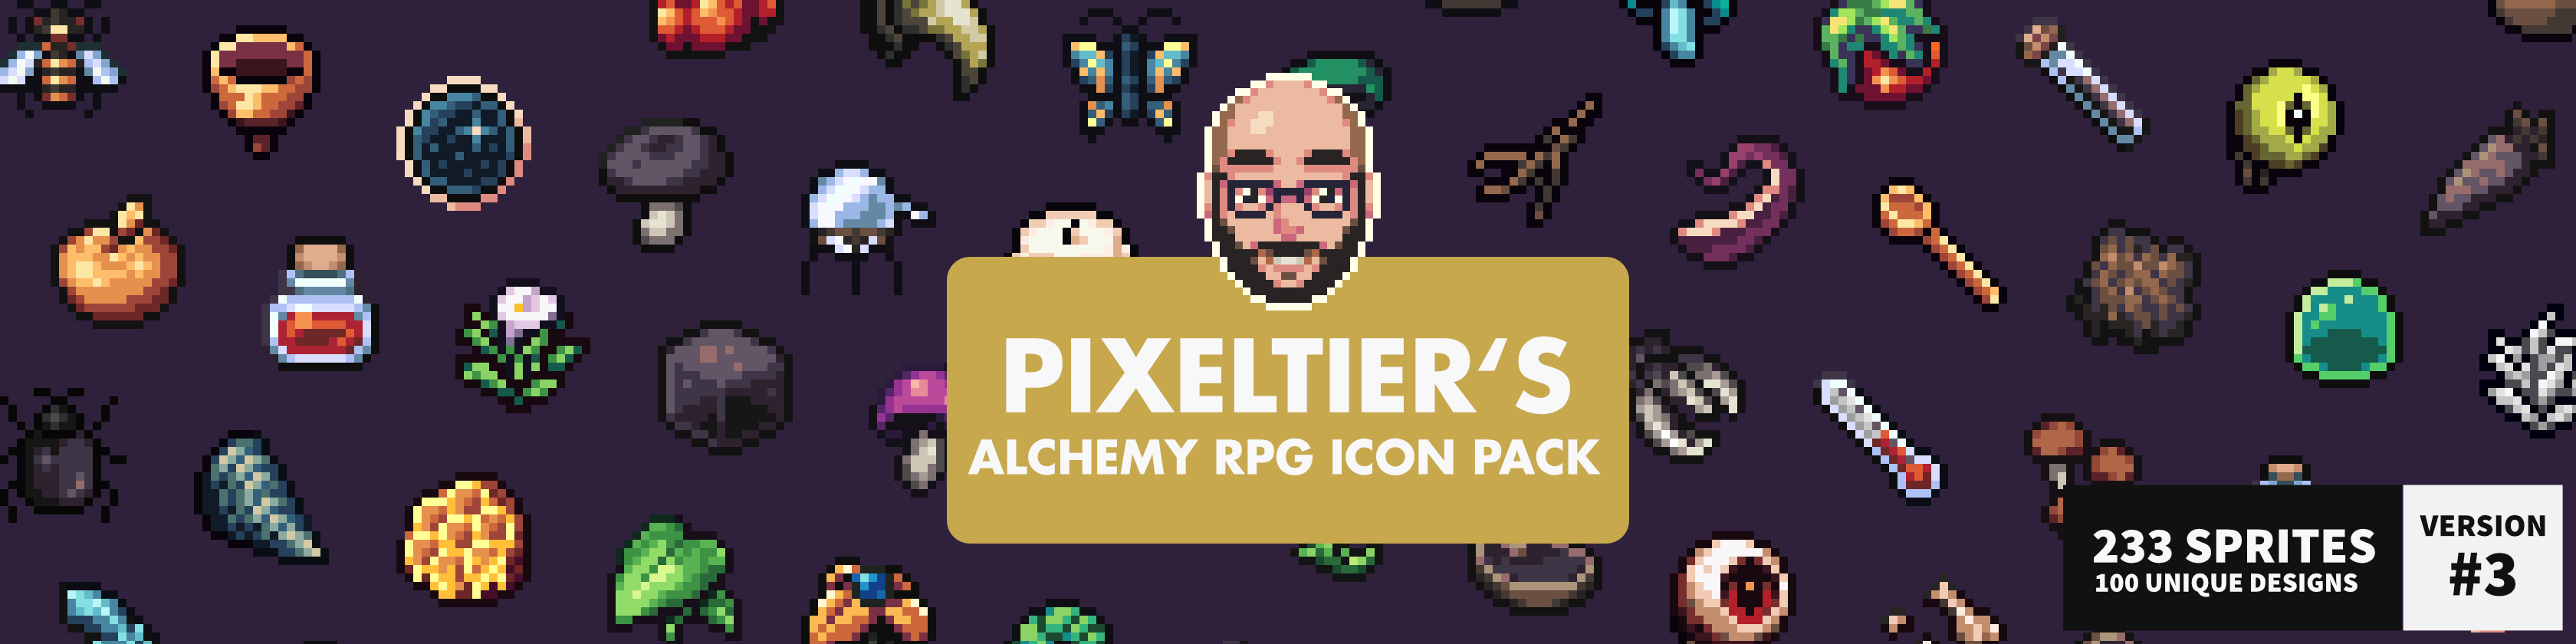 Pixeltier's Alchemy RPG Icon Pack /// Pixel Art